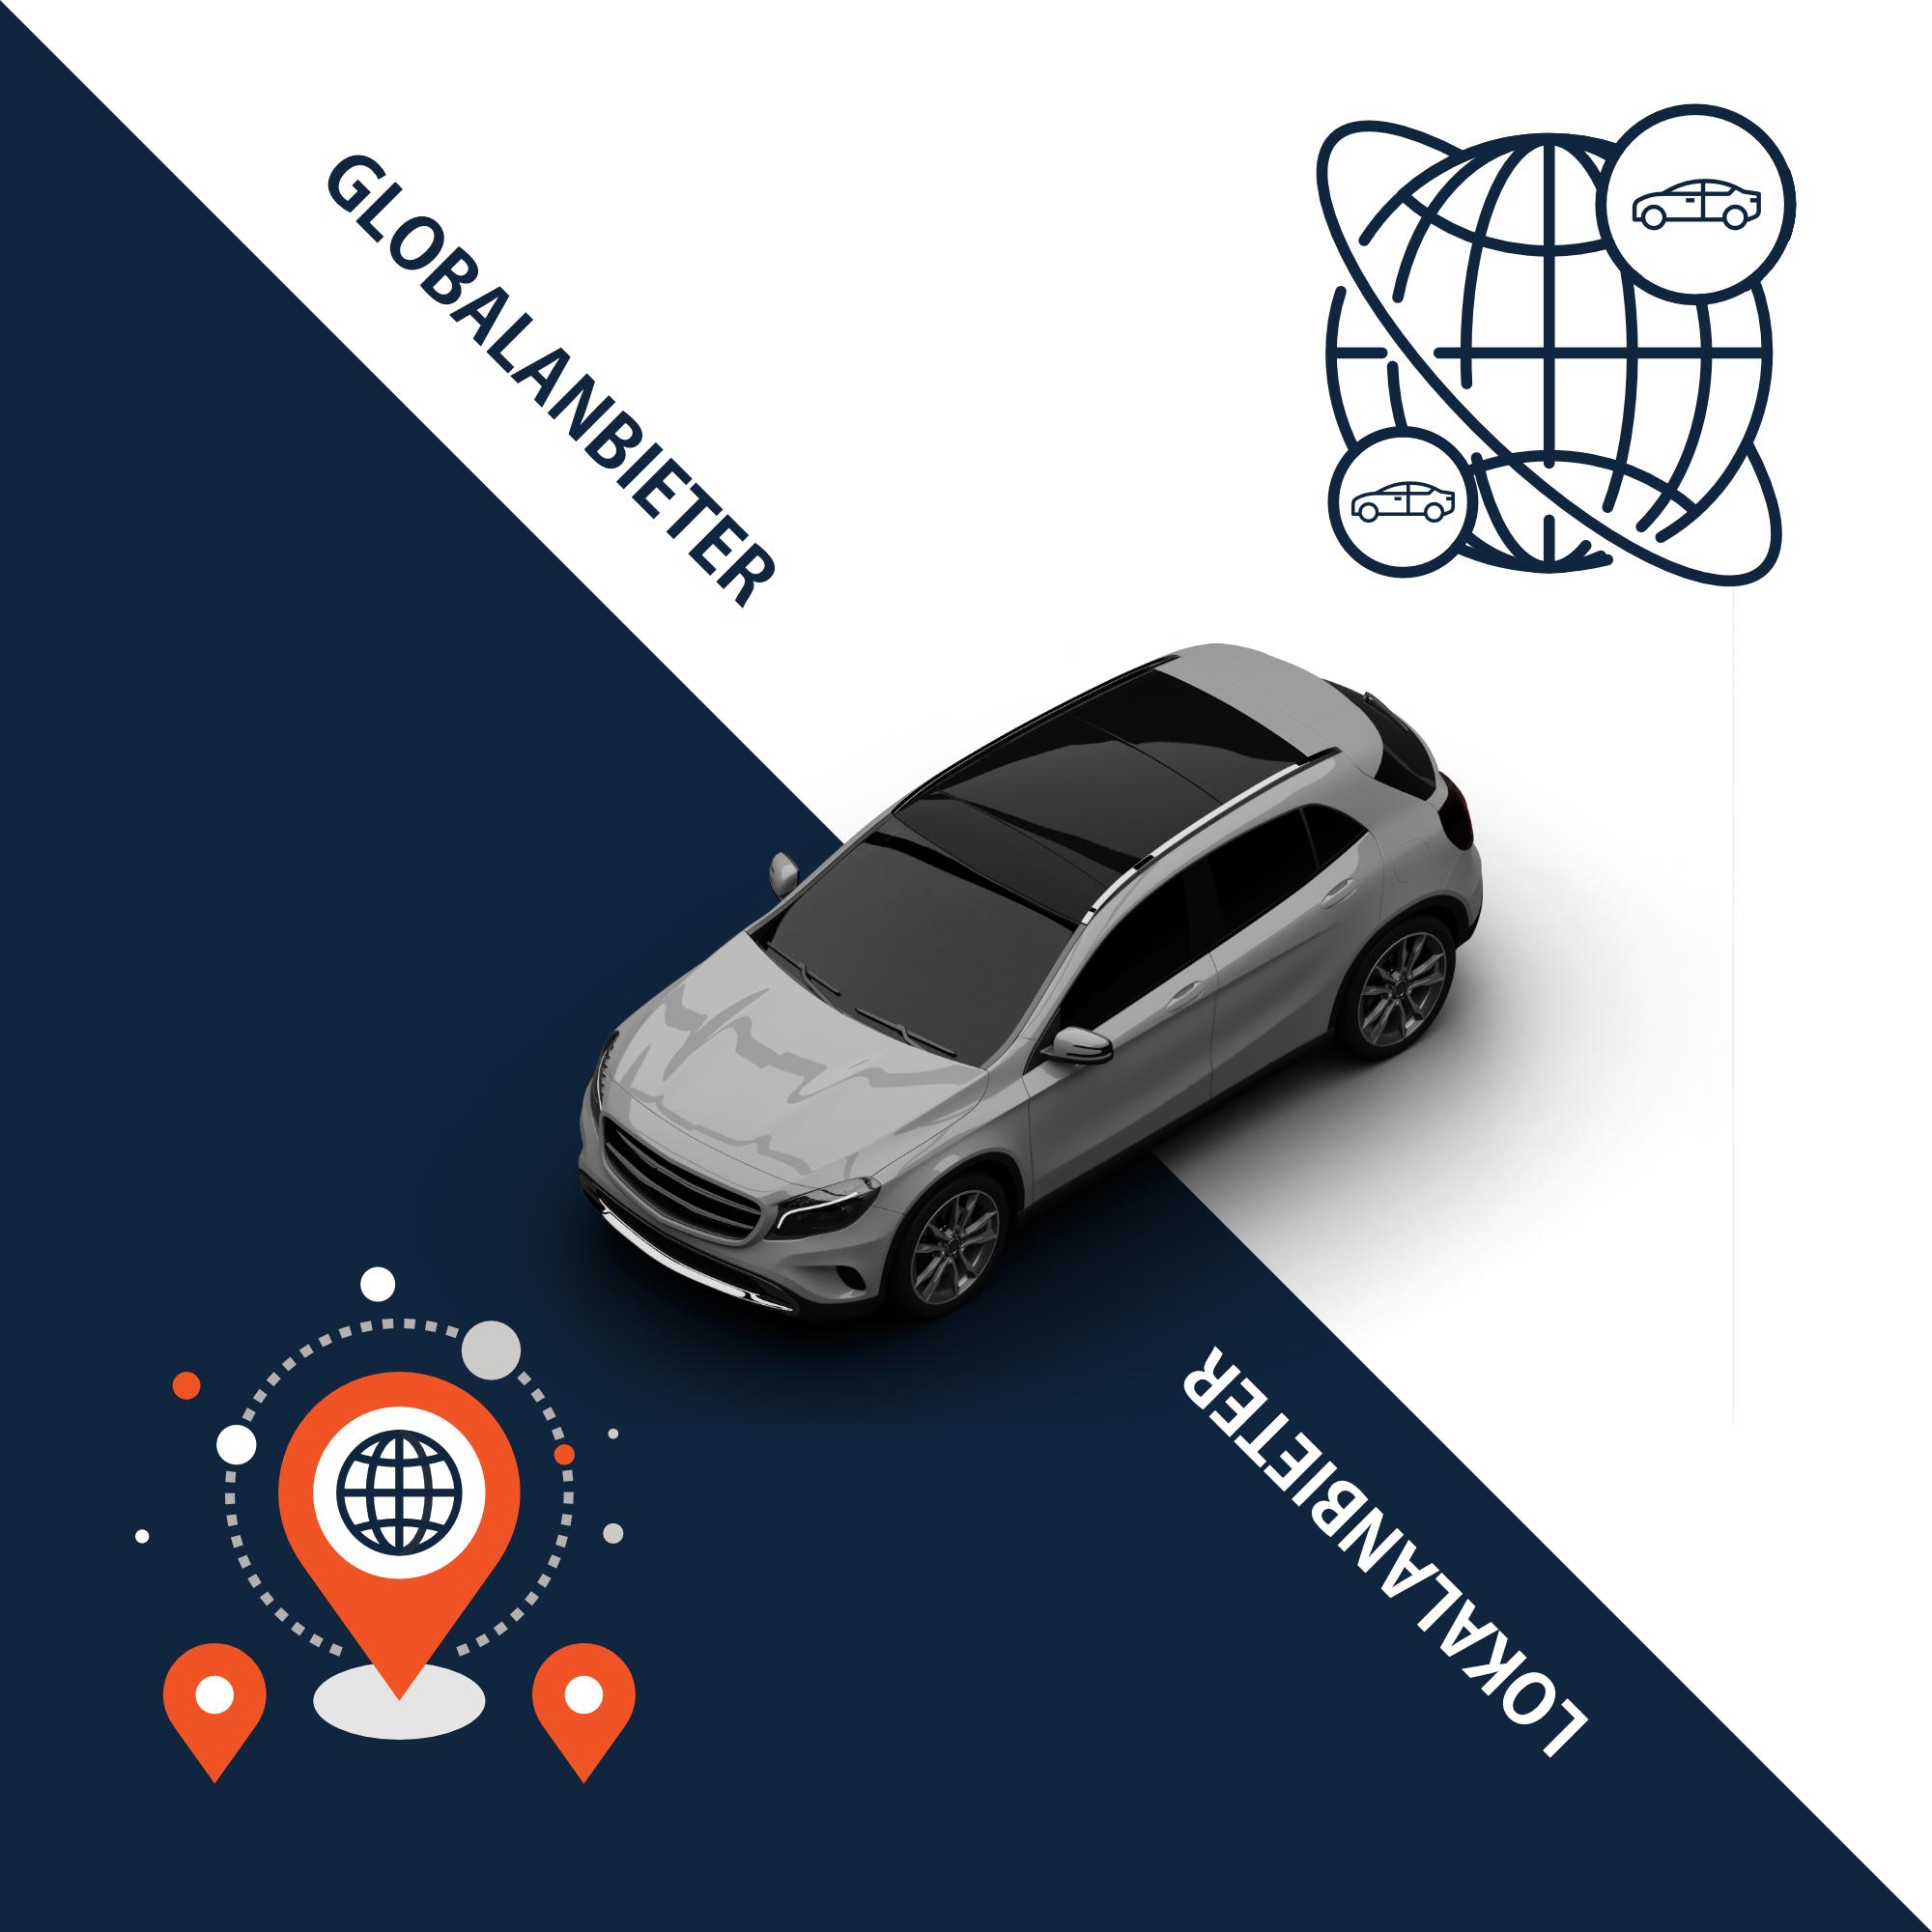 Ist ein global agierender Chauffeurservice Anbieter, der nicht über eigene Fahrzeuge verfügt, tatsächlich besser geeignet als ein Lokal Dienstleister?